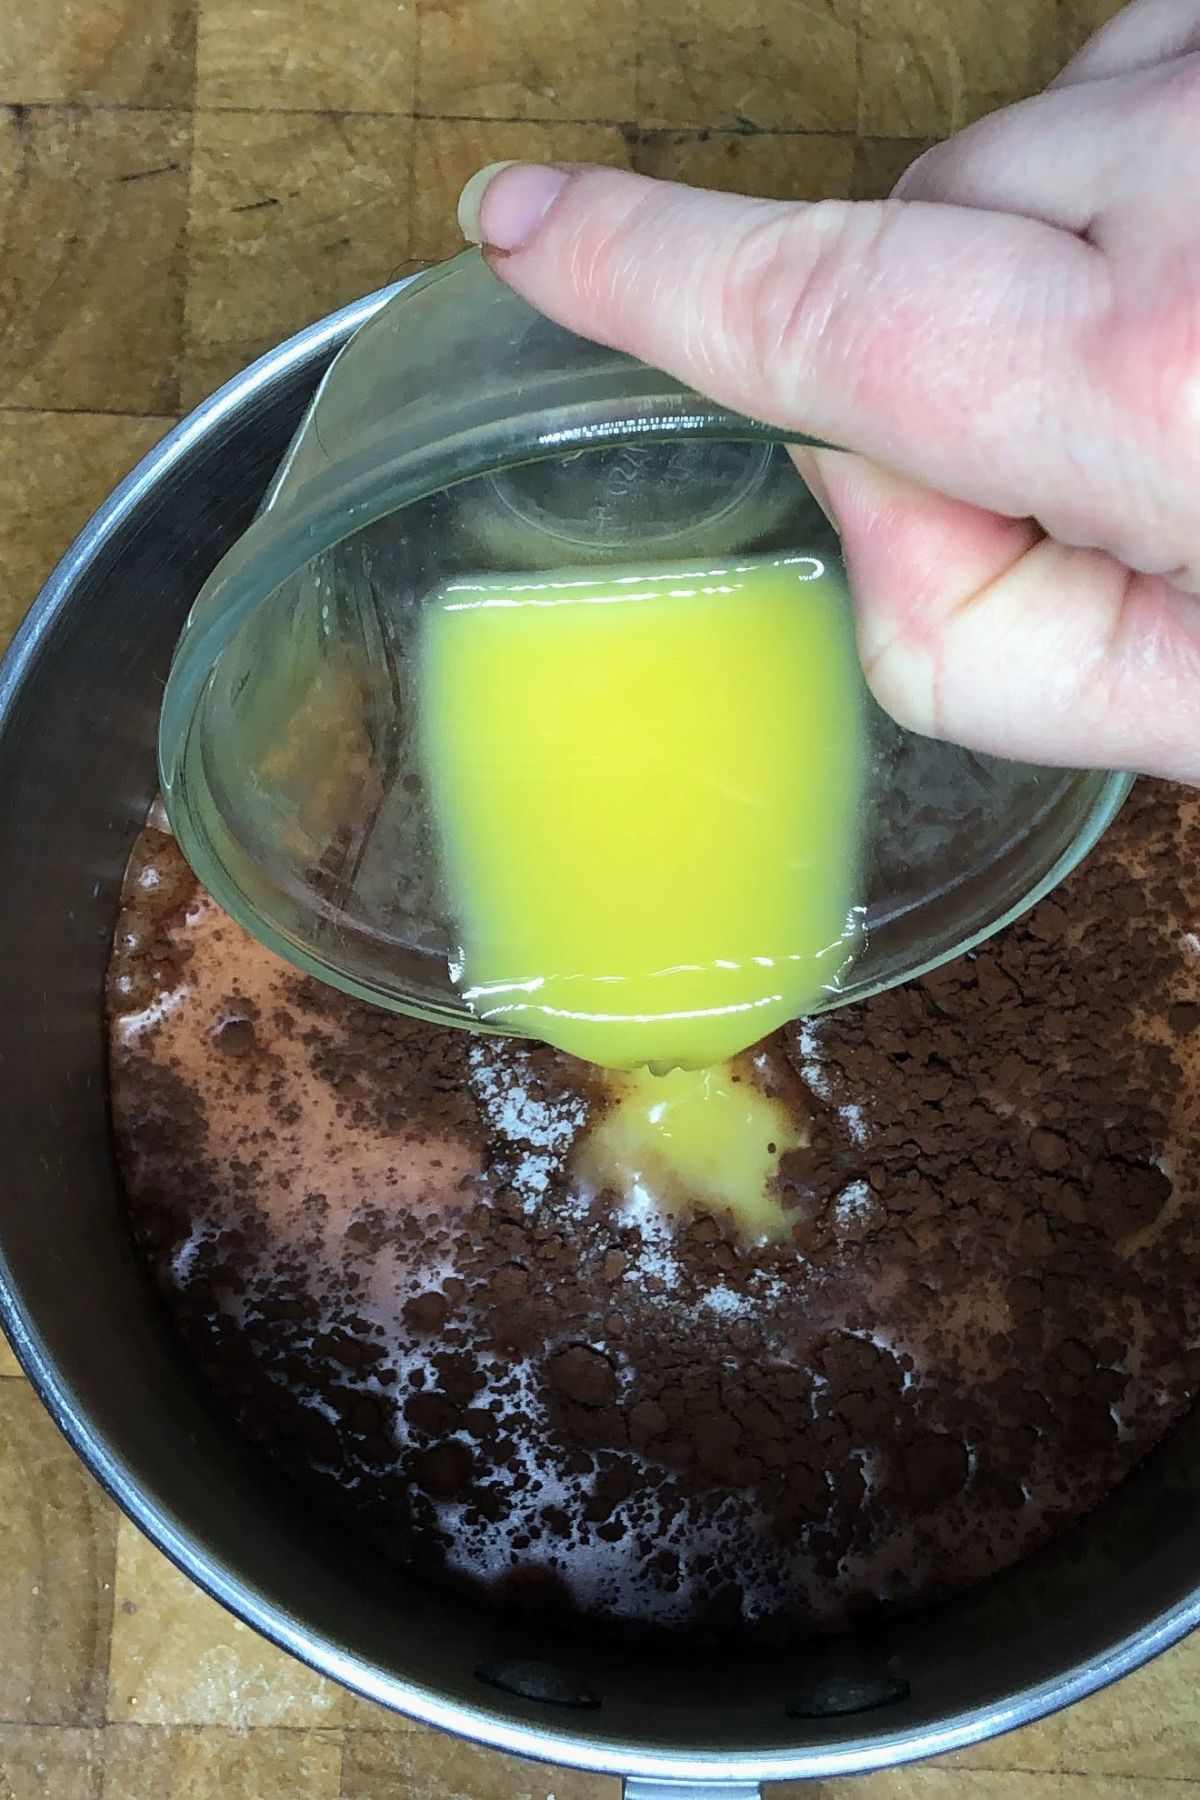 Pouring orange juice into a pot.